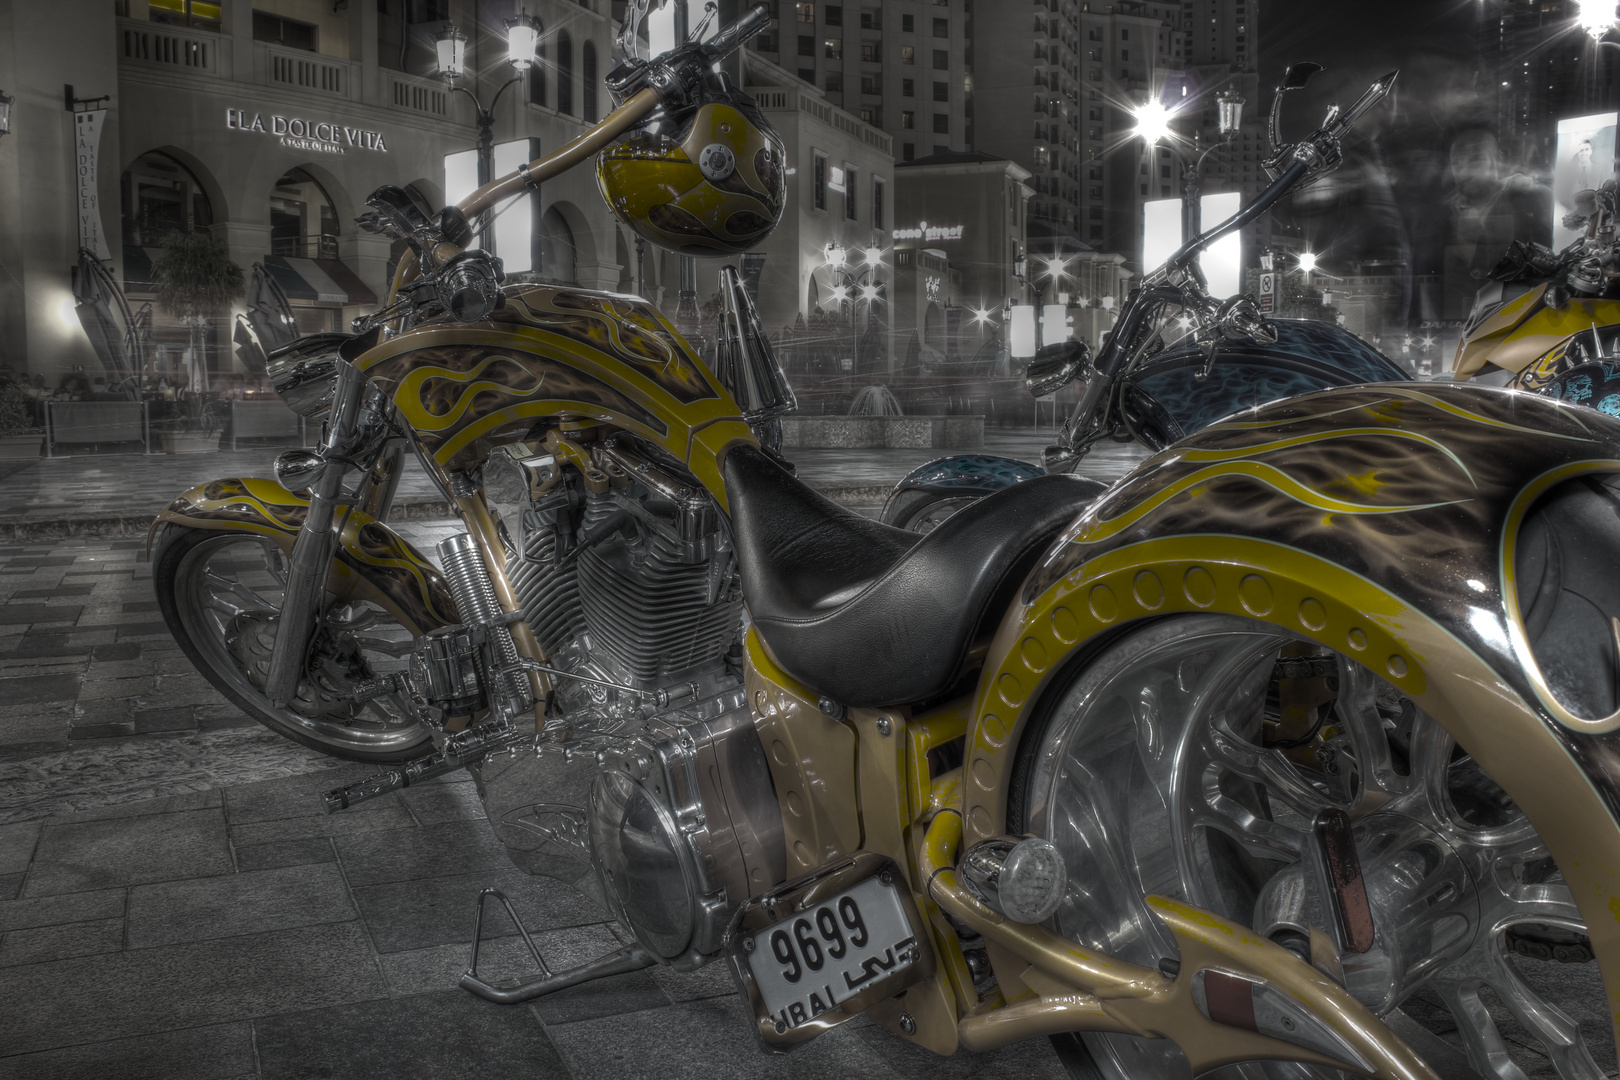 Custom Bike at Jumeirah Beach Walk Dubai